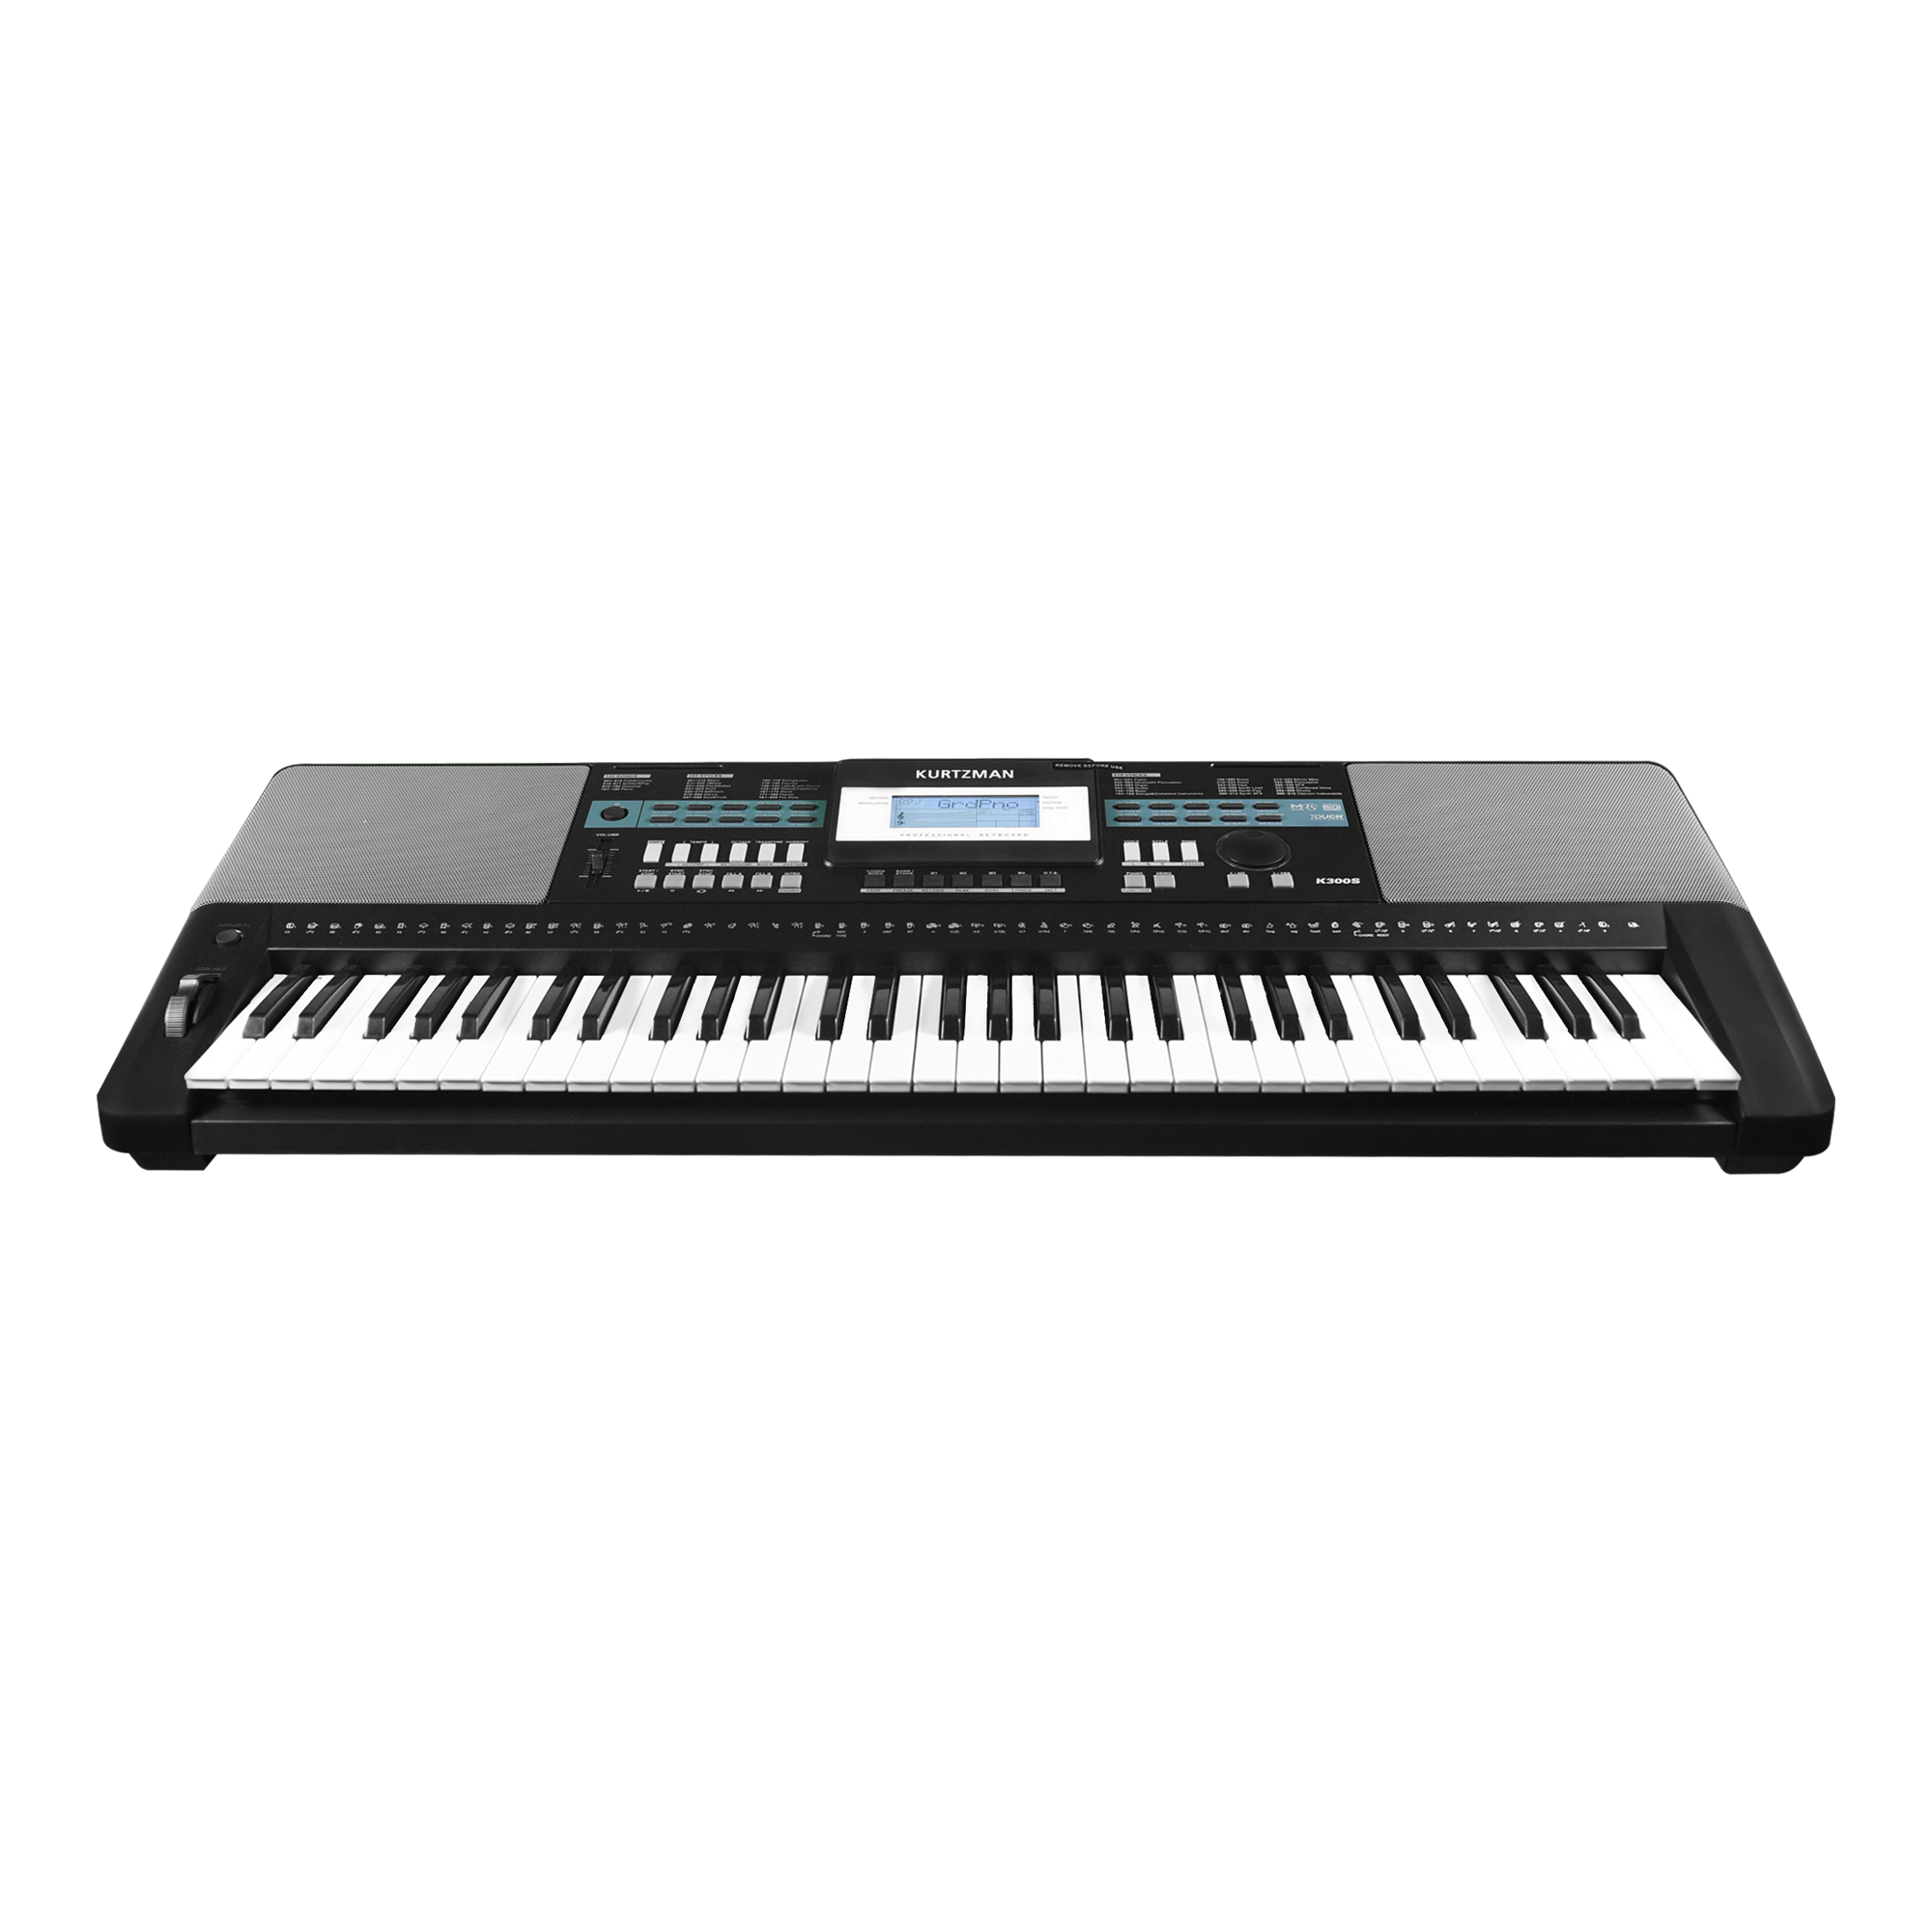 Đàn Organ điện tử/ Portable Keyboard - Kzm Kurtzman K300S - Accompaniment Keyboard - Màu đen (BL) - Hàng chính hãng